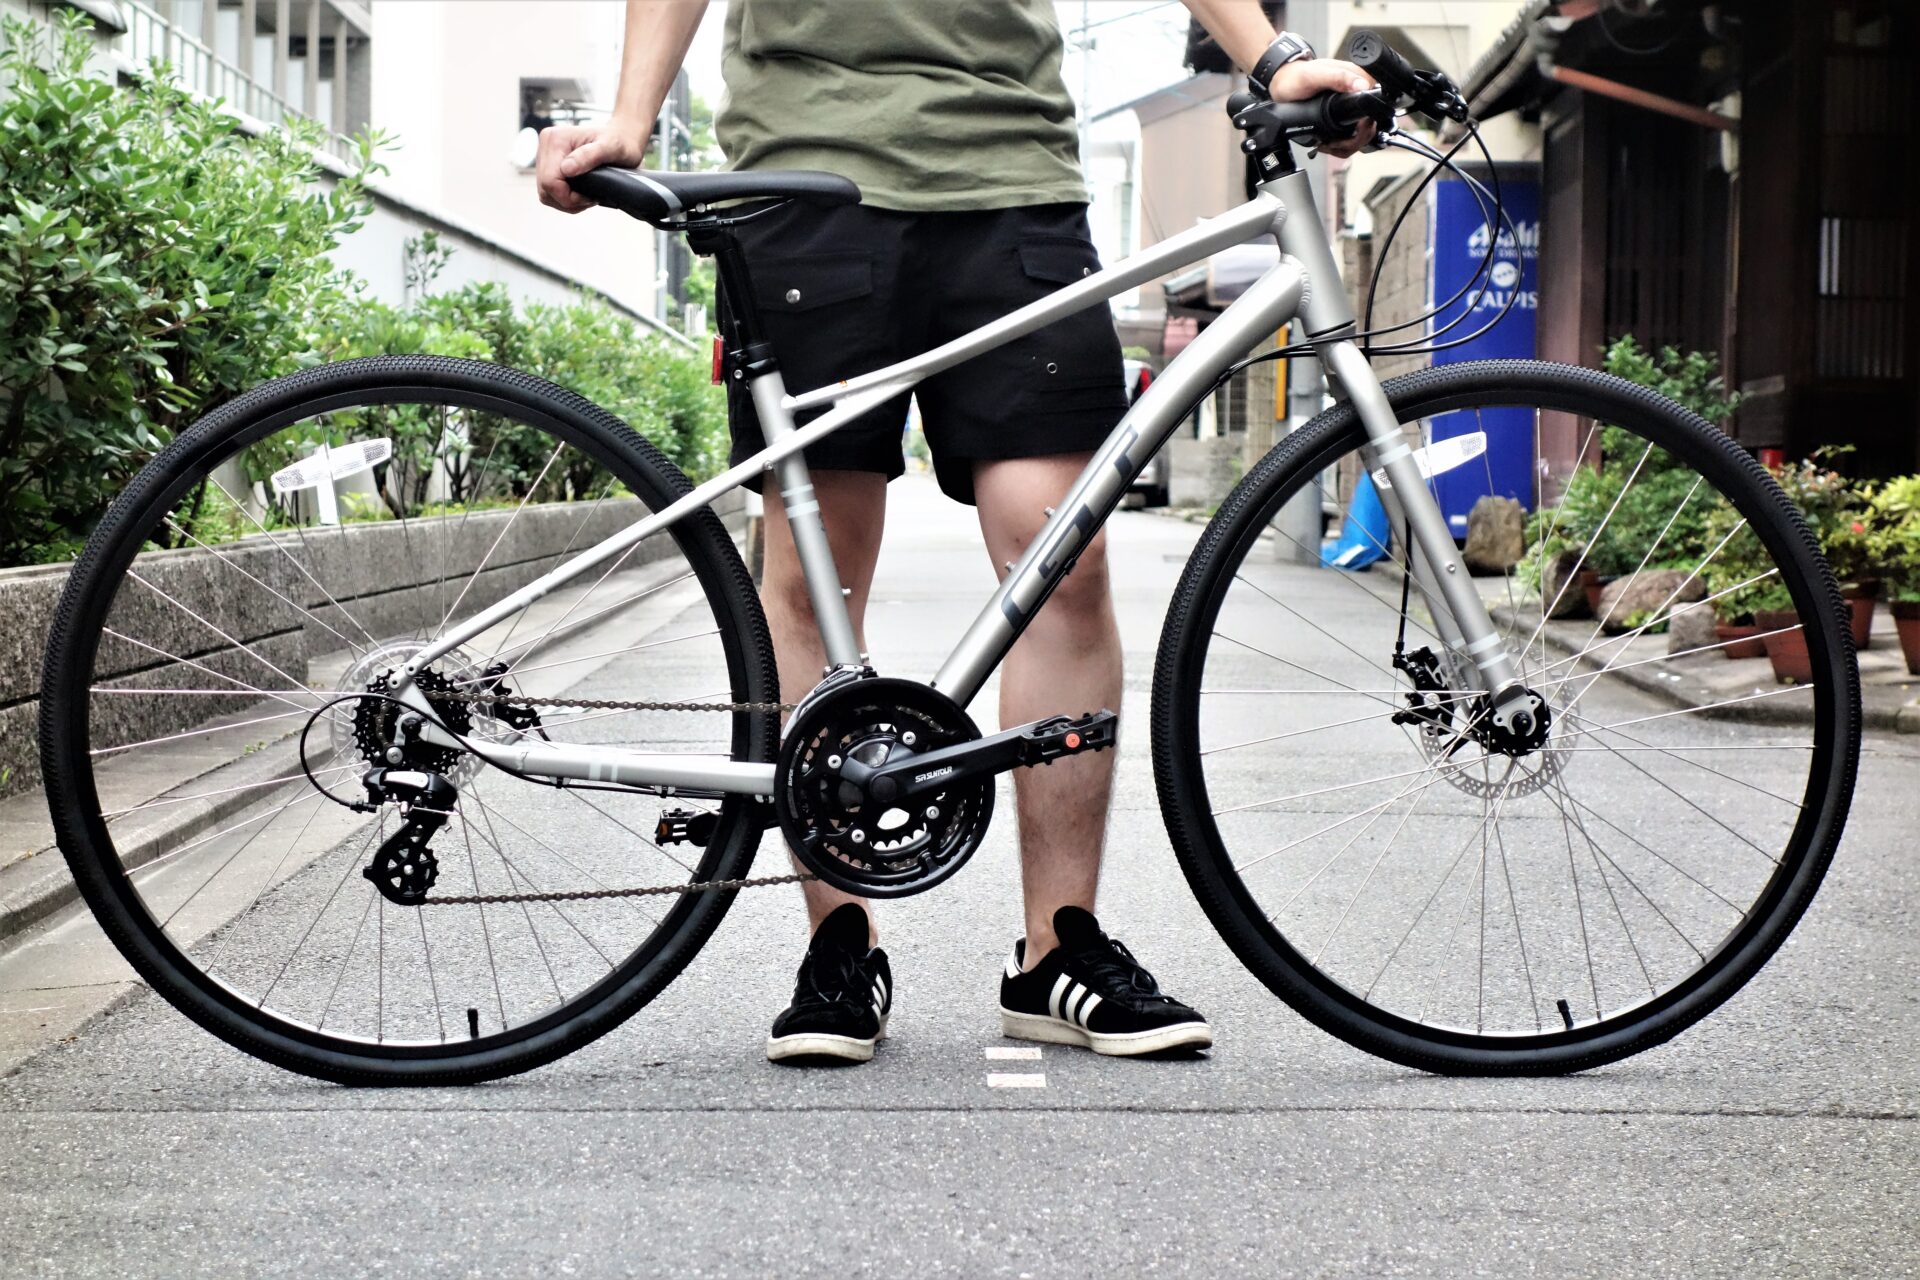 通勤 通学や街乗りにオススメ 見た目に反してゆったりと乗れる自転車 Gt Traffic 3 0 京都の中古自転車 新車販売 サイクルショップ エイリン